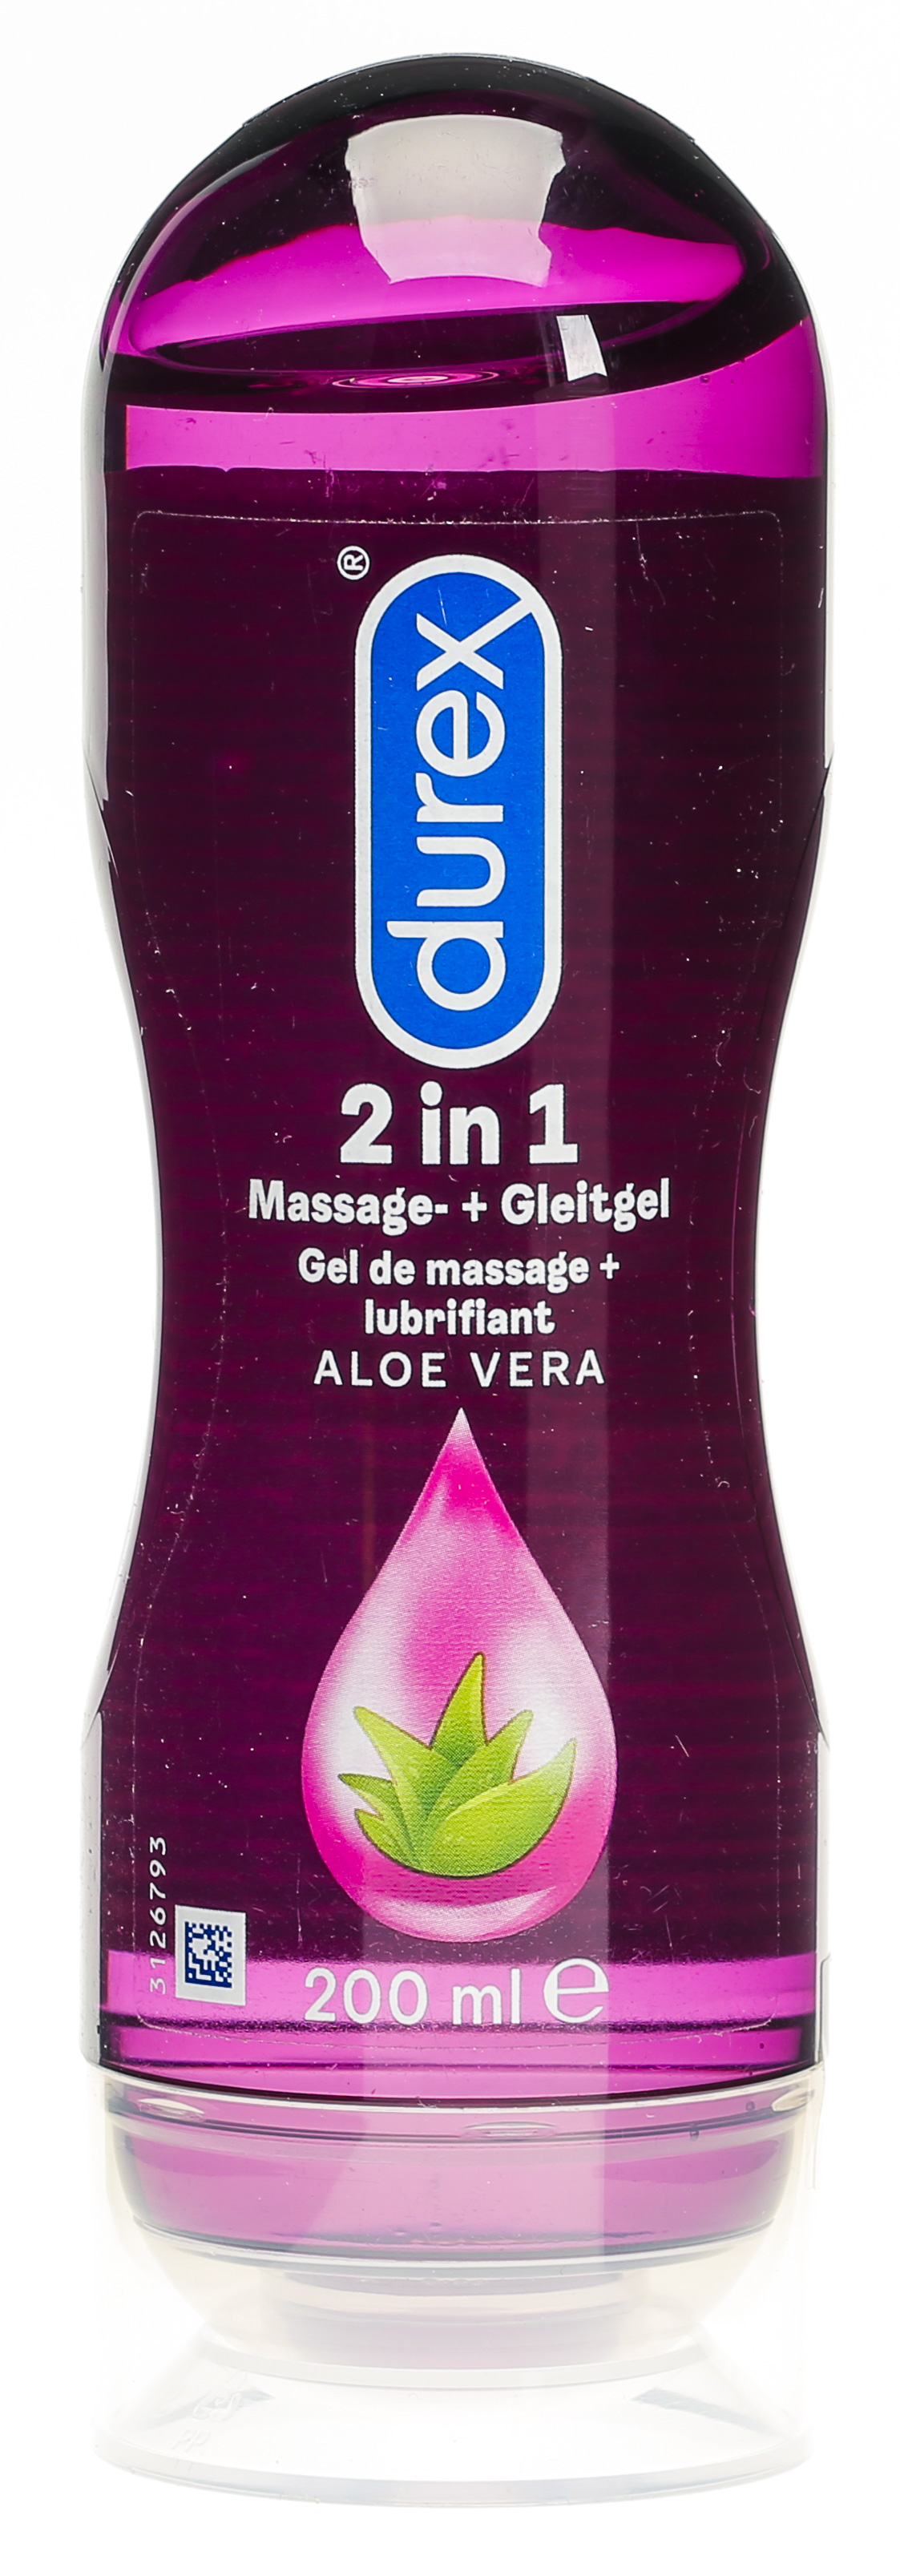 Durex Play Massage- und Gleitgel 2in1 Aloe Vera für harmonischen Sex